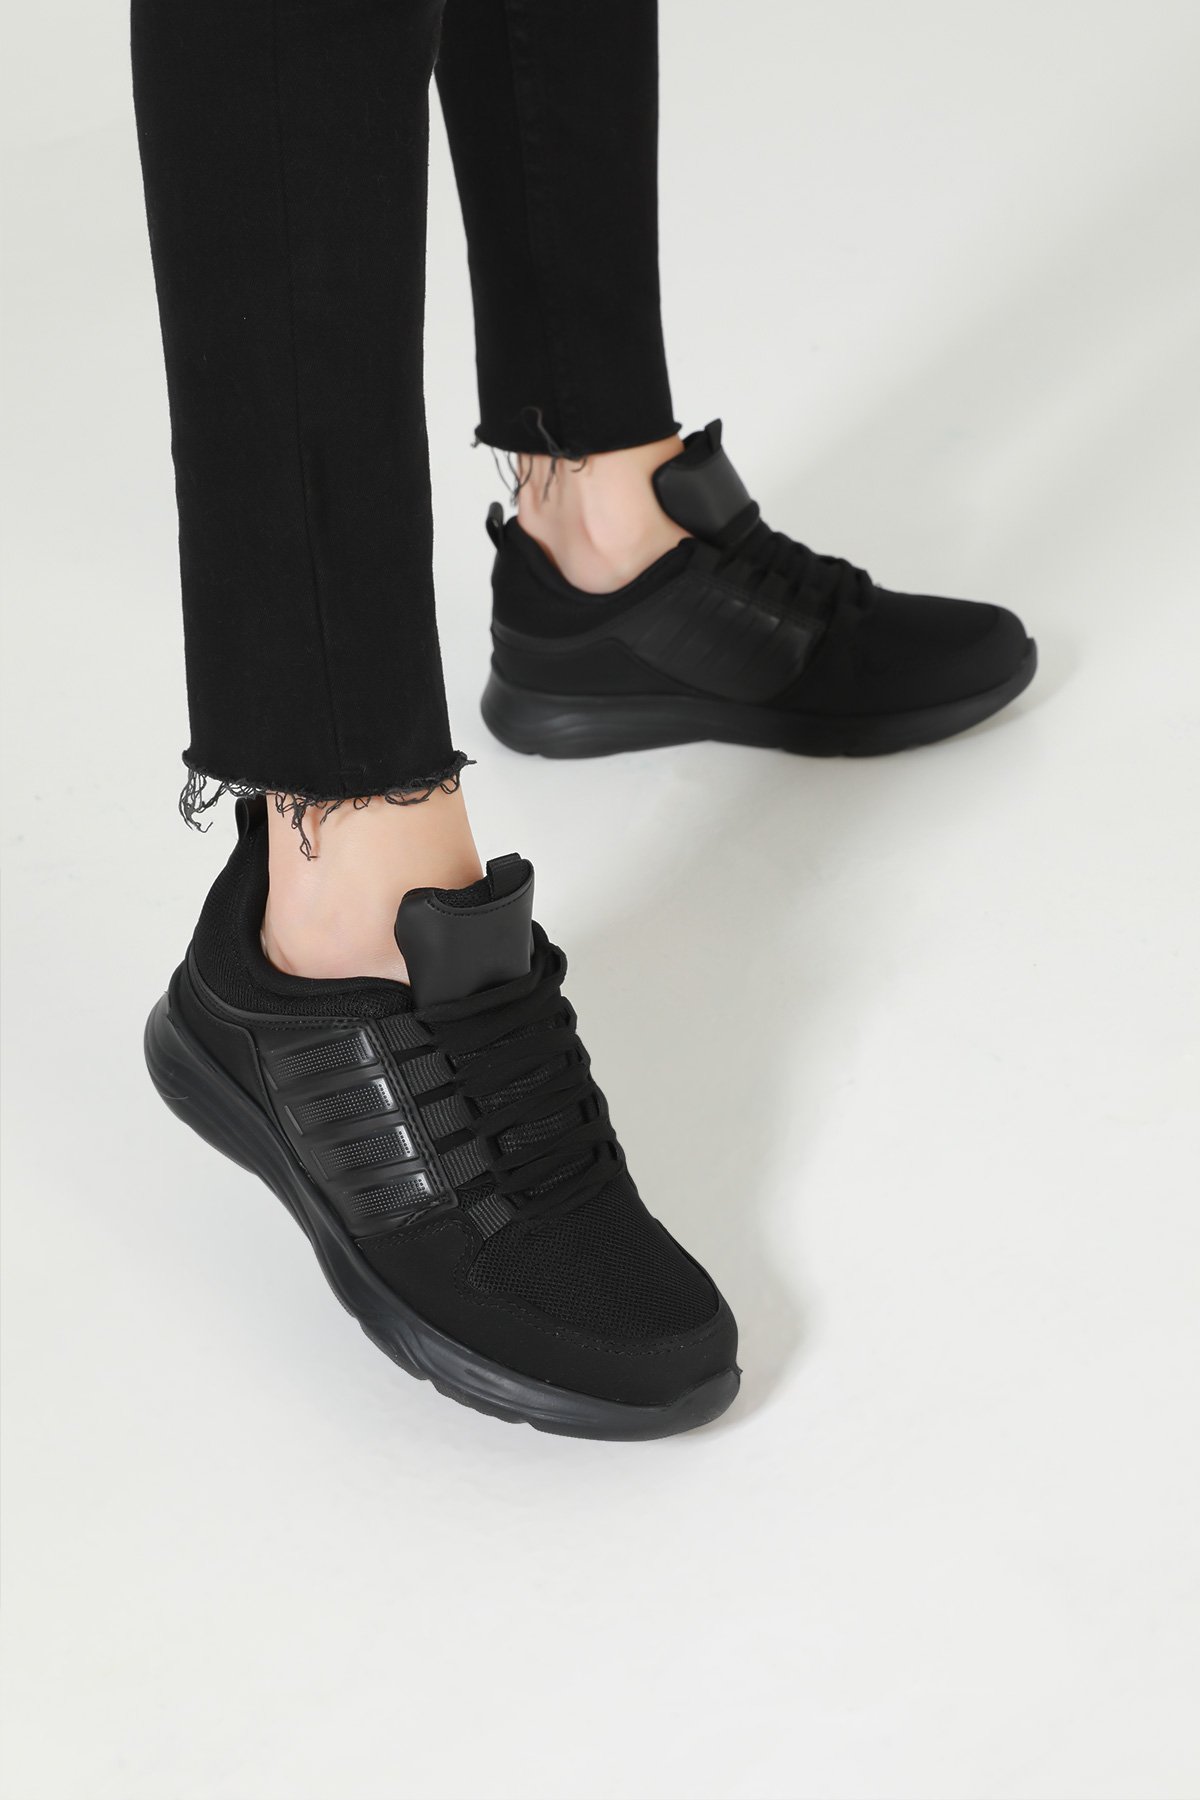 Kadın Spor Ayakkabı Siyah 500437 - tozlu.com